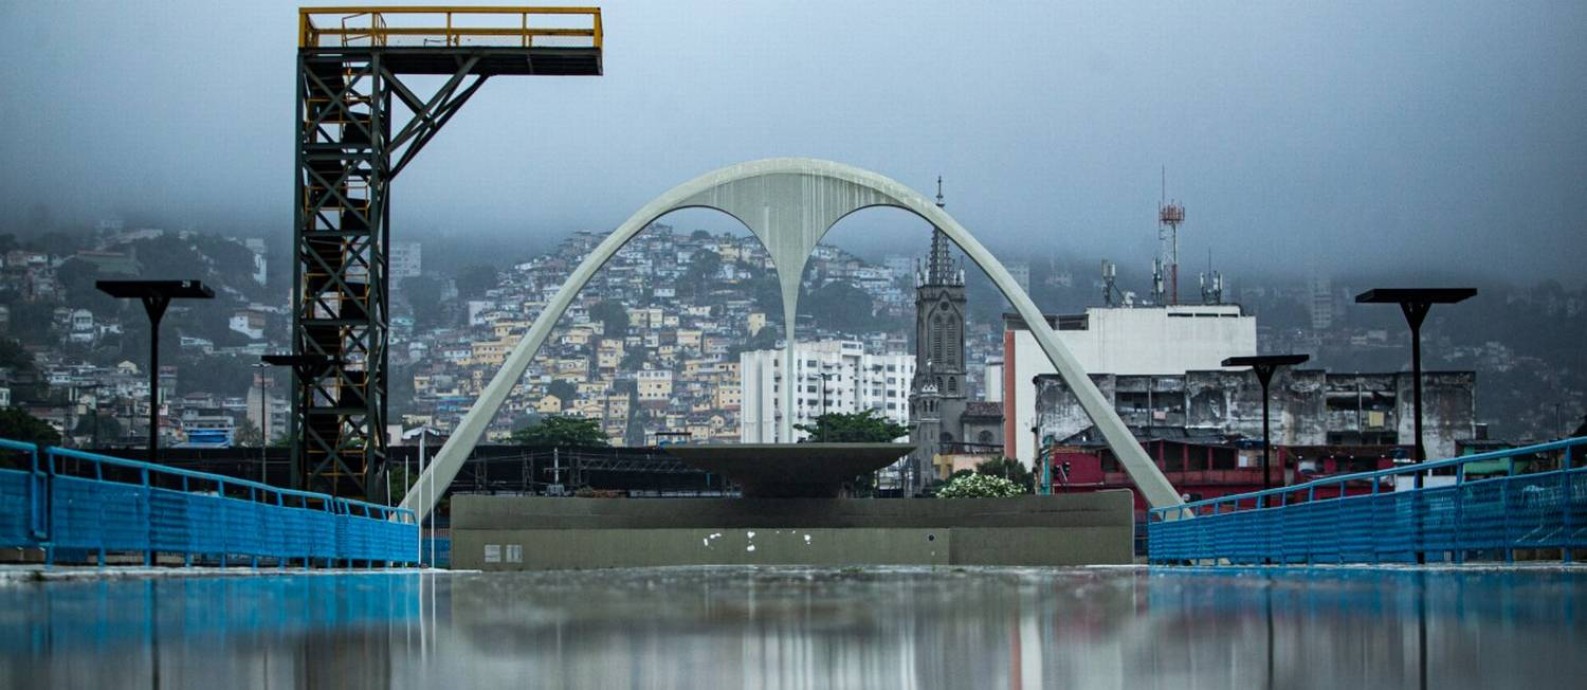 Sambódromo da Marquês de Sapucaí Foto: Hermes de Paula / Agência O Globo